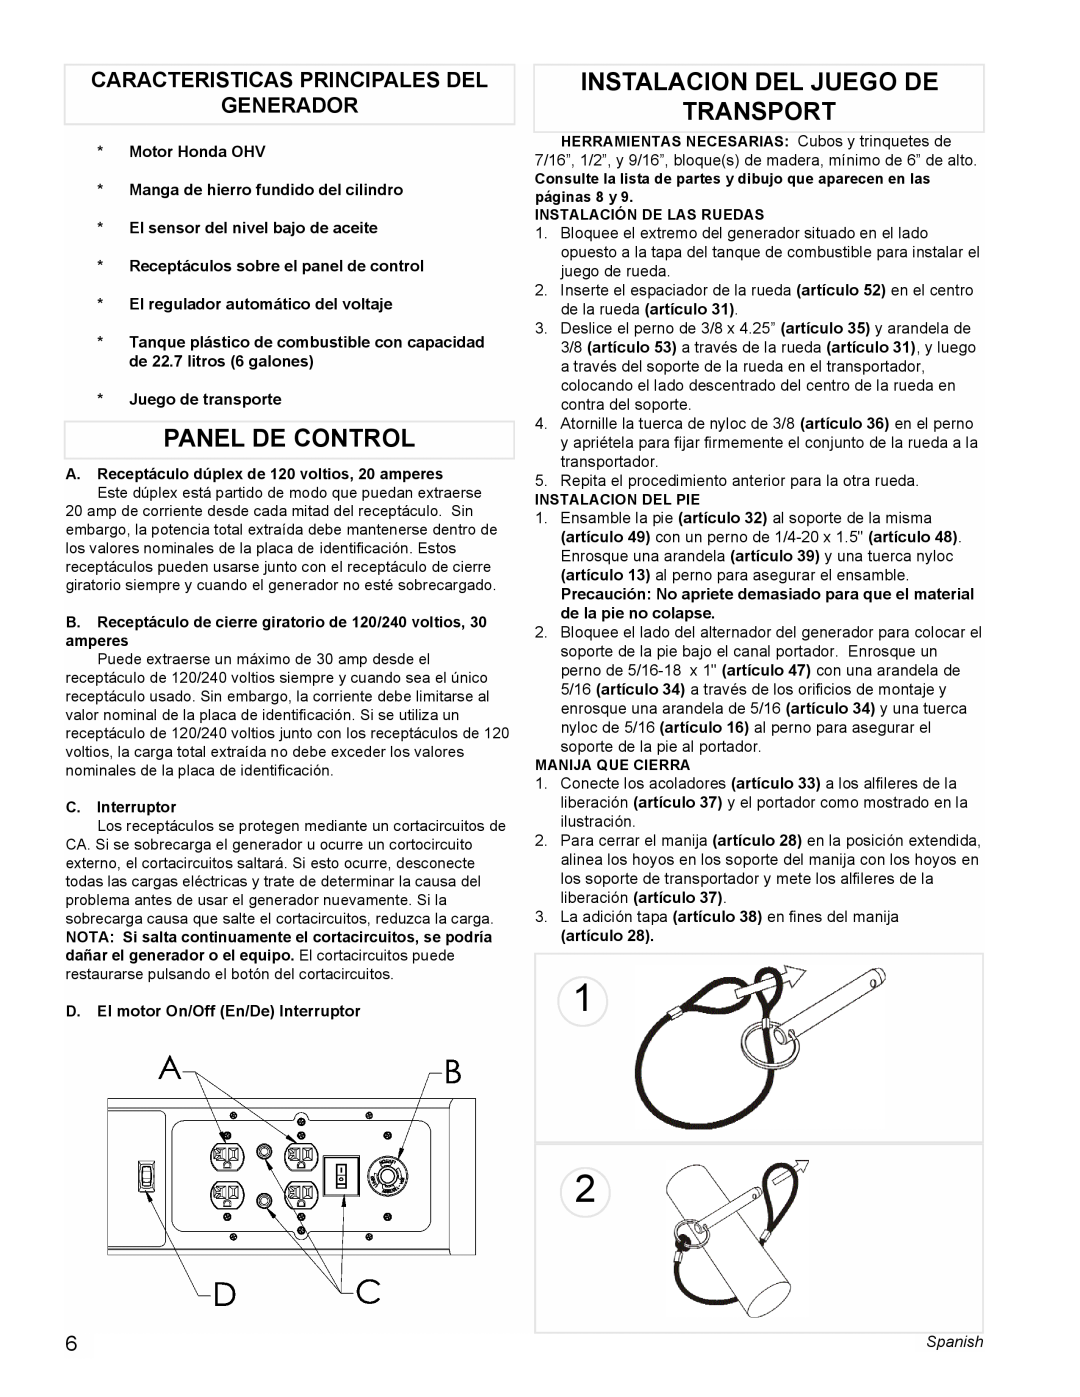 Powermate PC0495503 manual Panel De Control, Instalacion Del Juego De Transport, Caracteristicas Principales Del Generador 